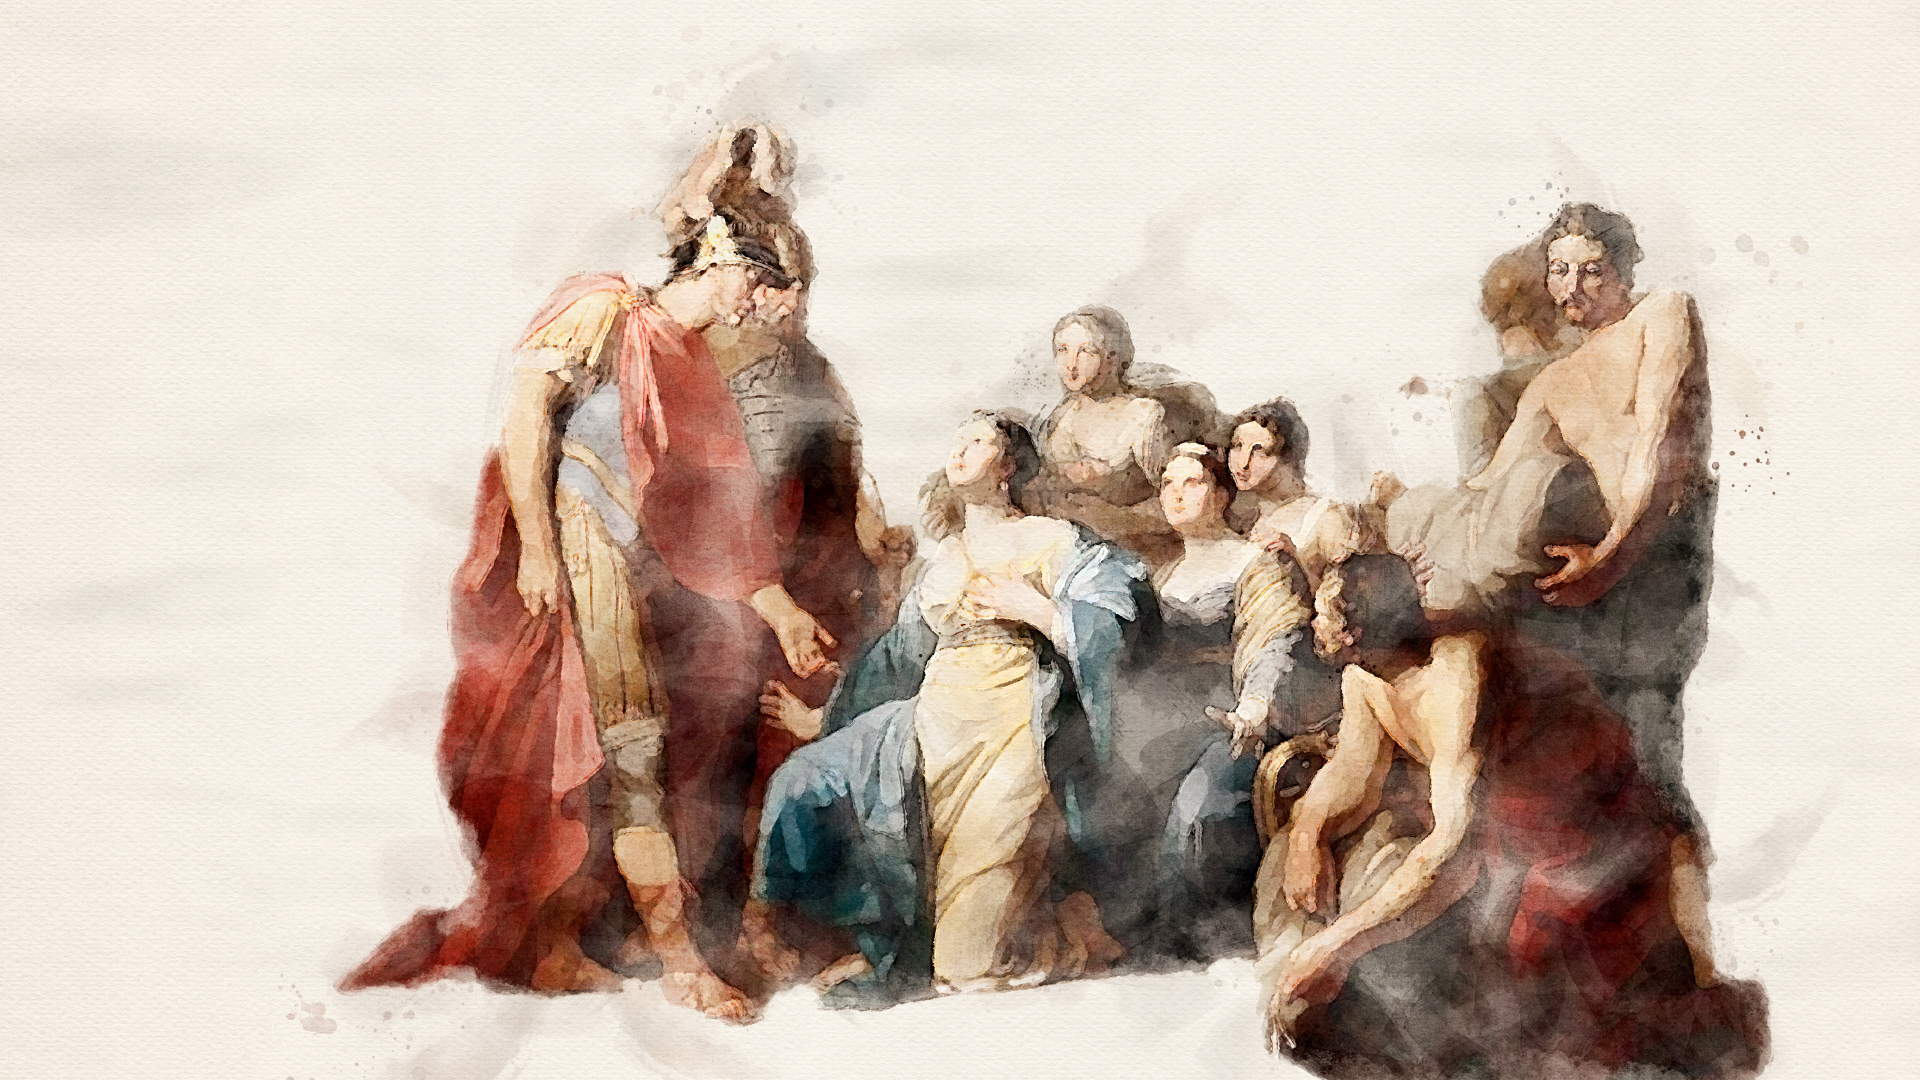 Imagen, arriba: La reina de Saba arrodillada ante el rey Salomón (reproducción artística de un óleo de Johann Friedrich August Tischbein por Tischbein